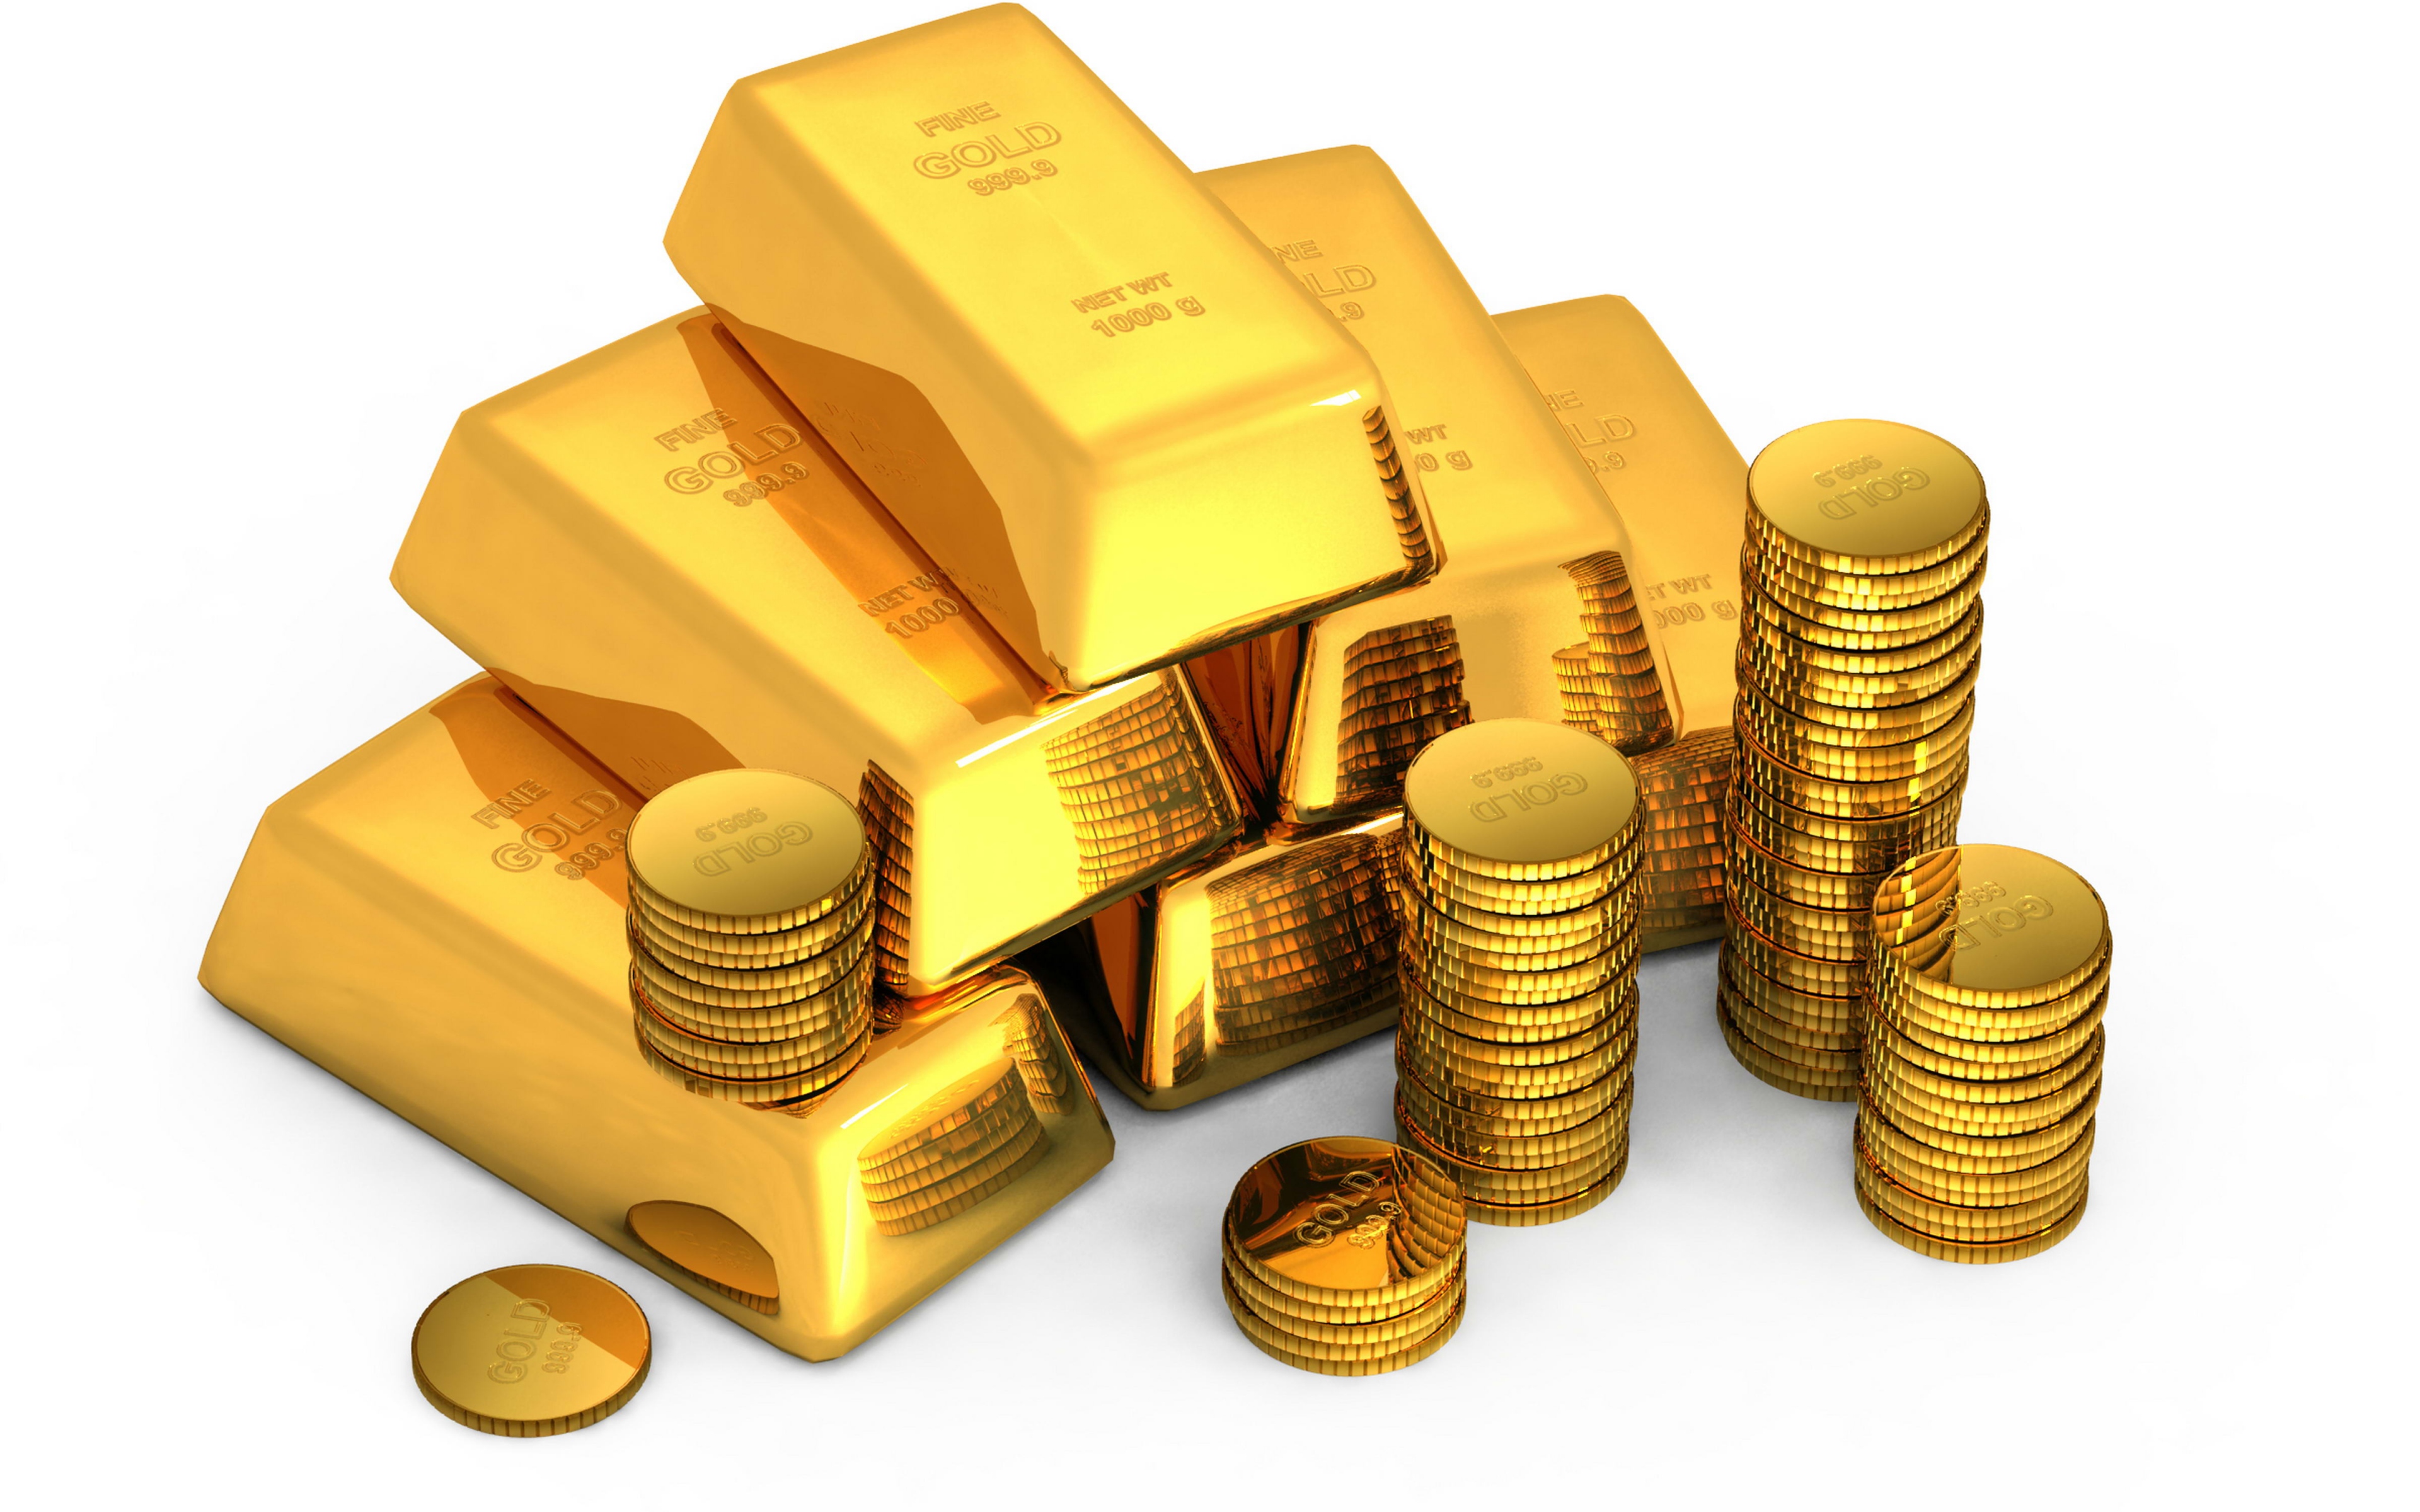 Ревалоризация валюты - в зависимости от контекста может подразумевать обмен бумажных денег на золото